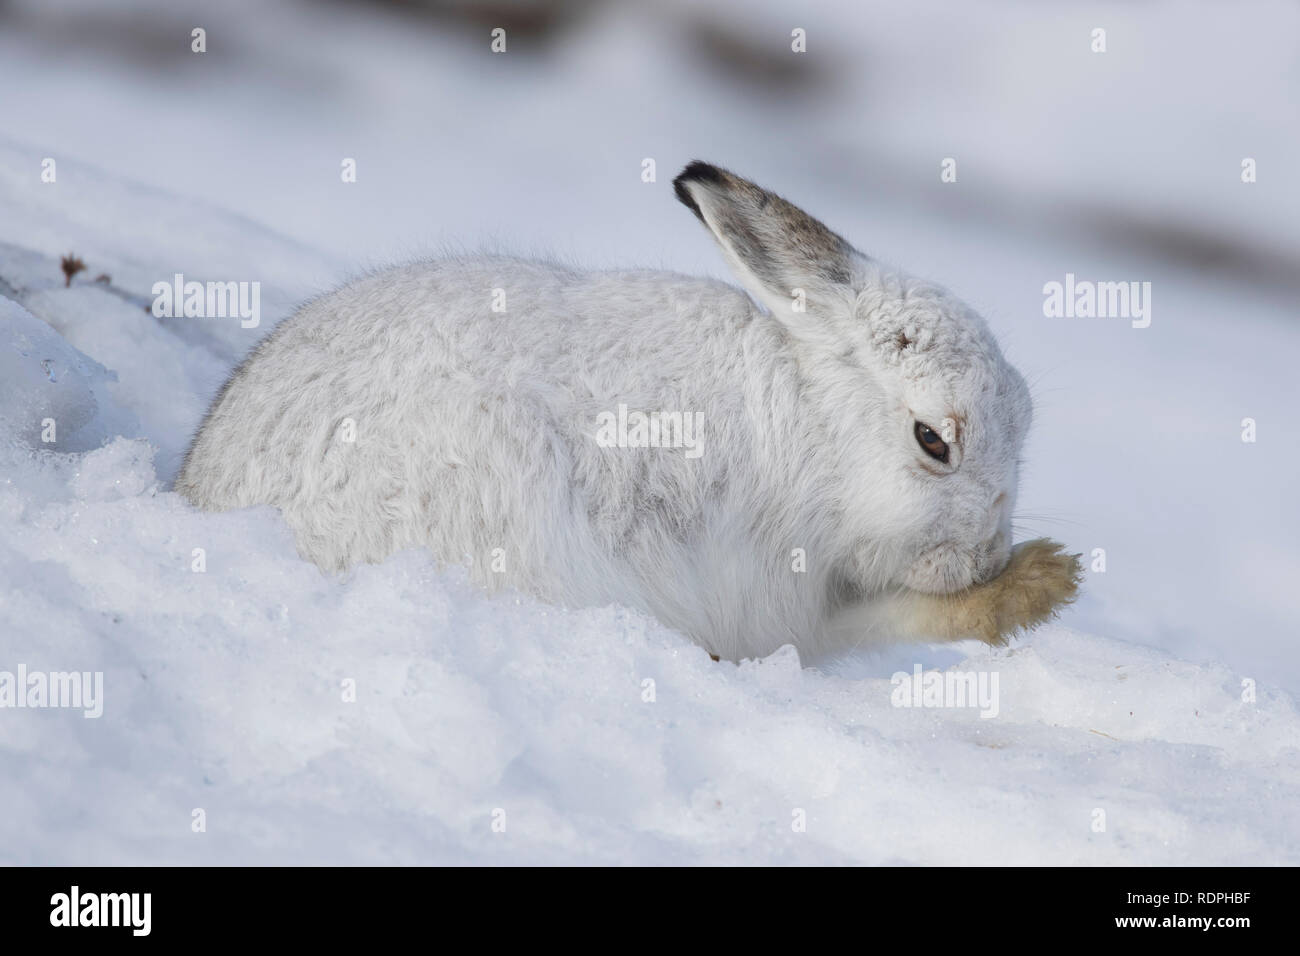 Schneehase/Alpine Hase/Schneehase (Lepus timidus) in weiß winter Fell pflege Fell des Vorderbeines Stockfoto